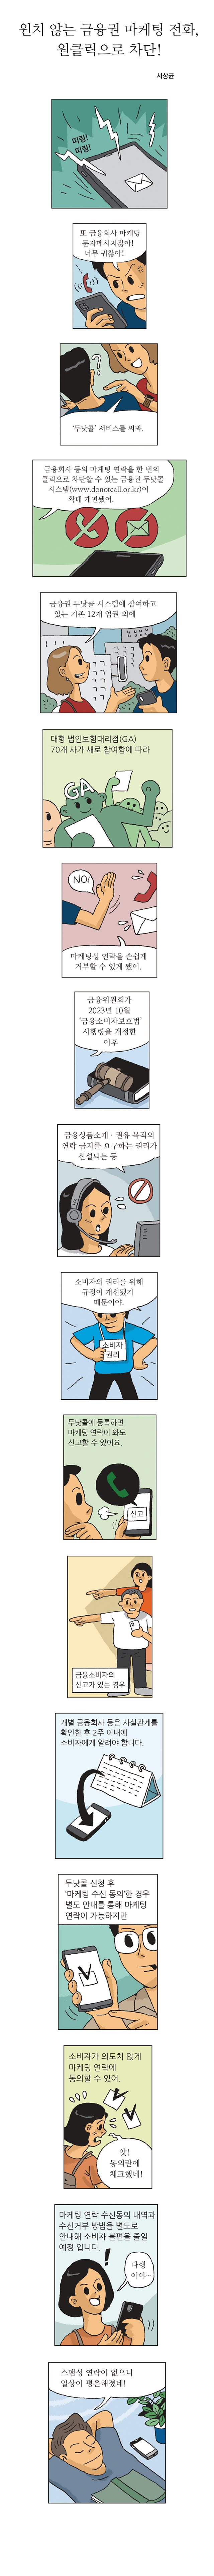 원치 않는 금융권 마케팅 전화, 원클릭으로 차단!